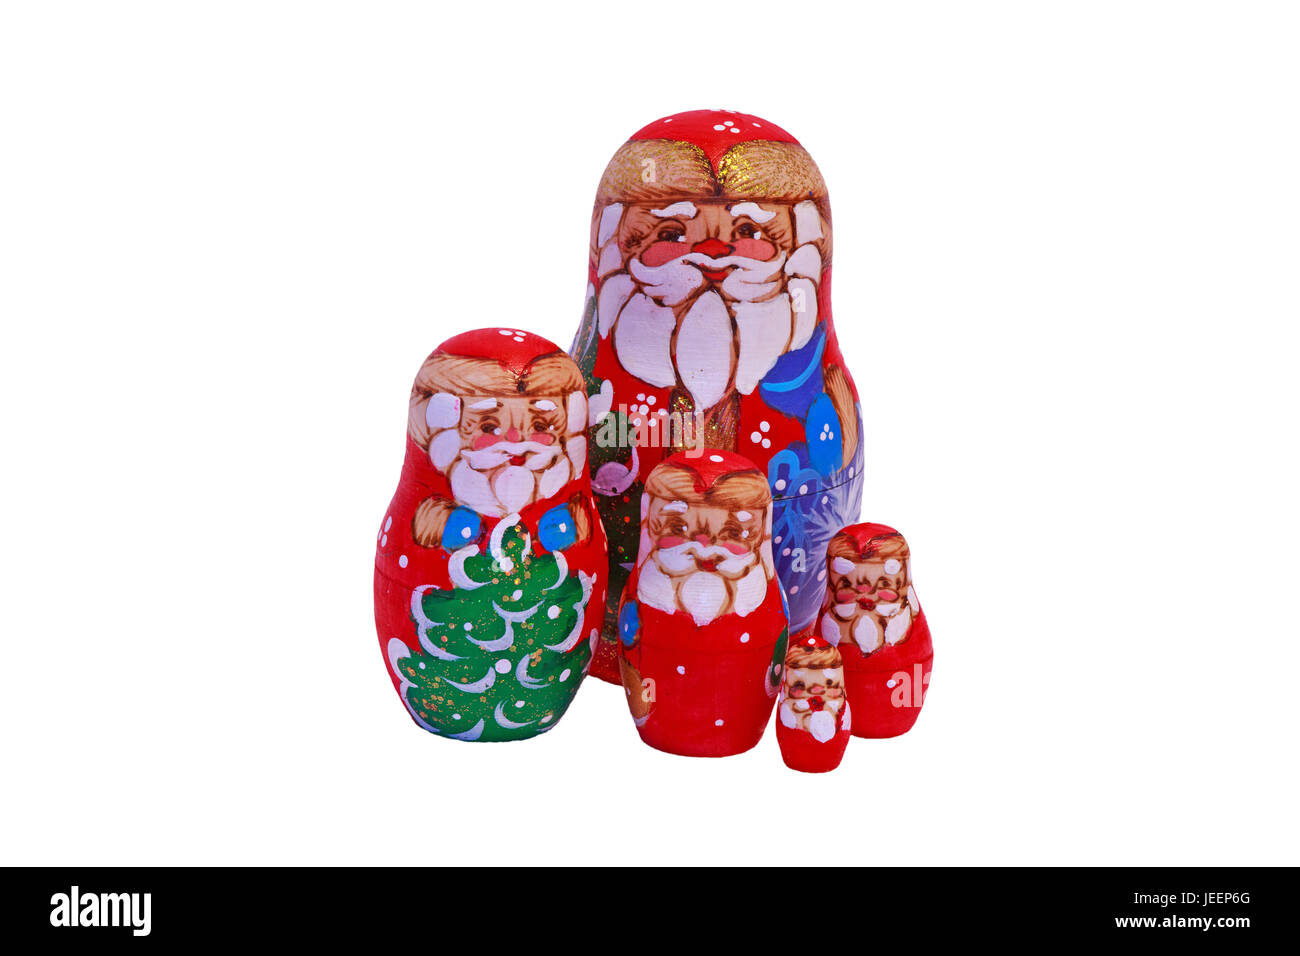 Weihnachten Matrjoschka-Puppen.  Eine Sammlung von russischen Matroschka Puppen dekoriert, um Weihnachten zu feiern. Stockfoto